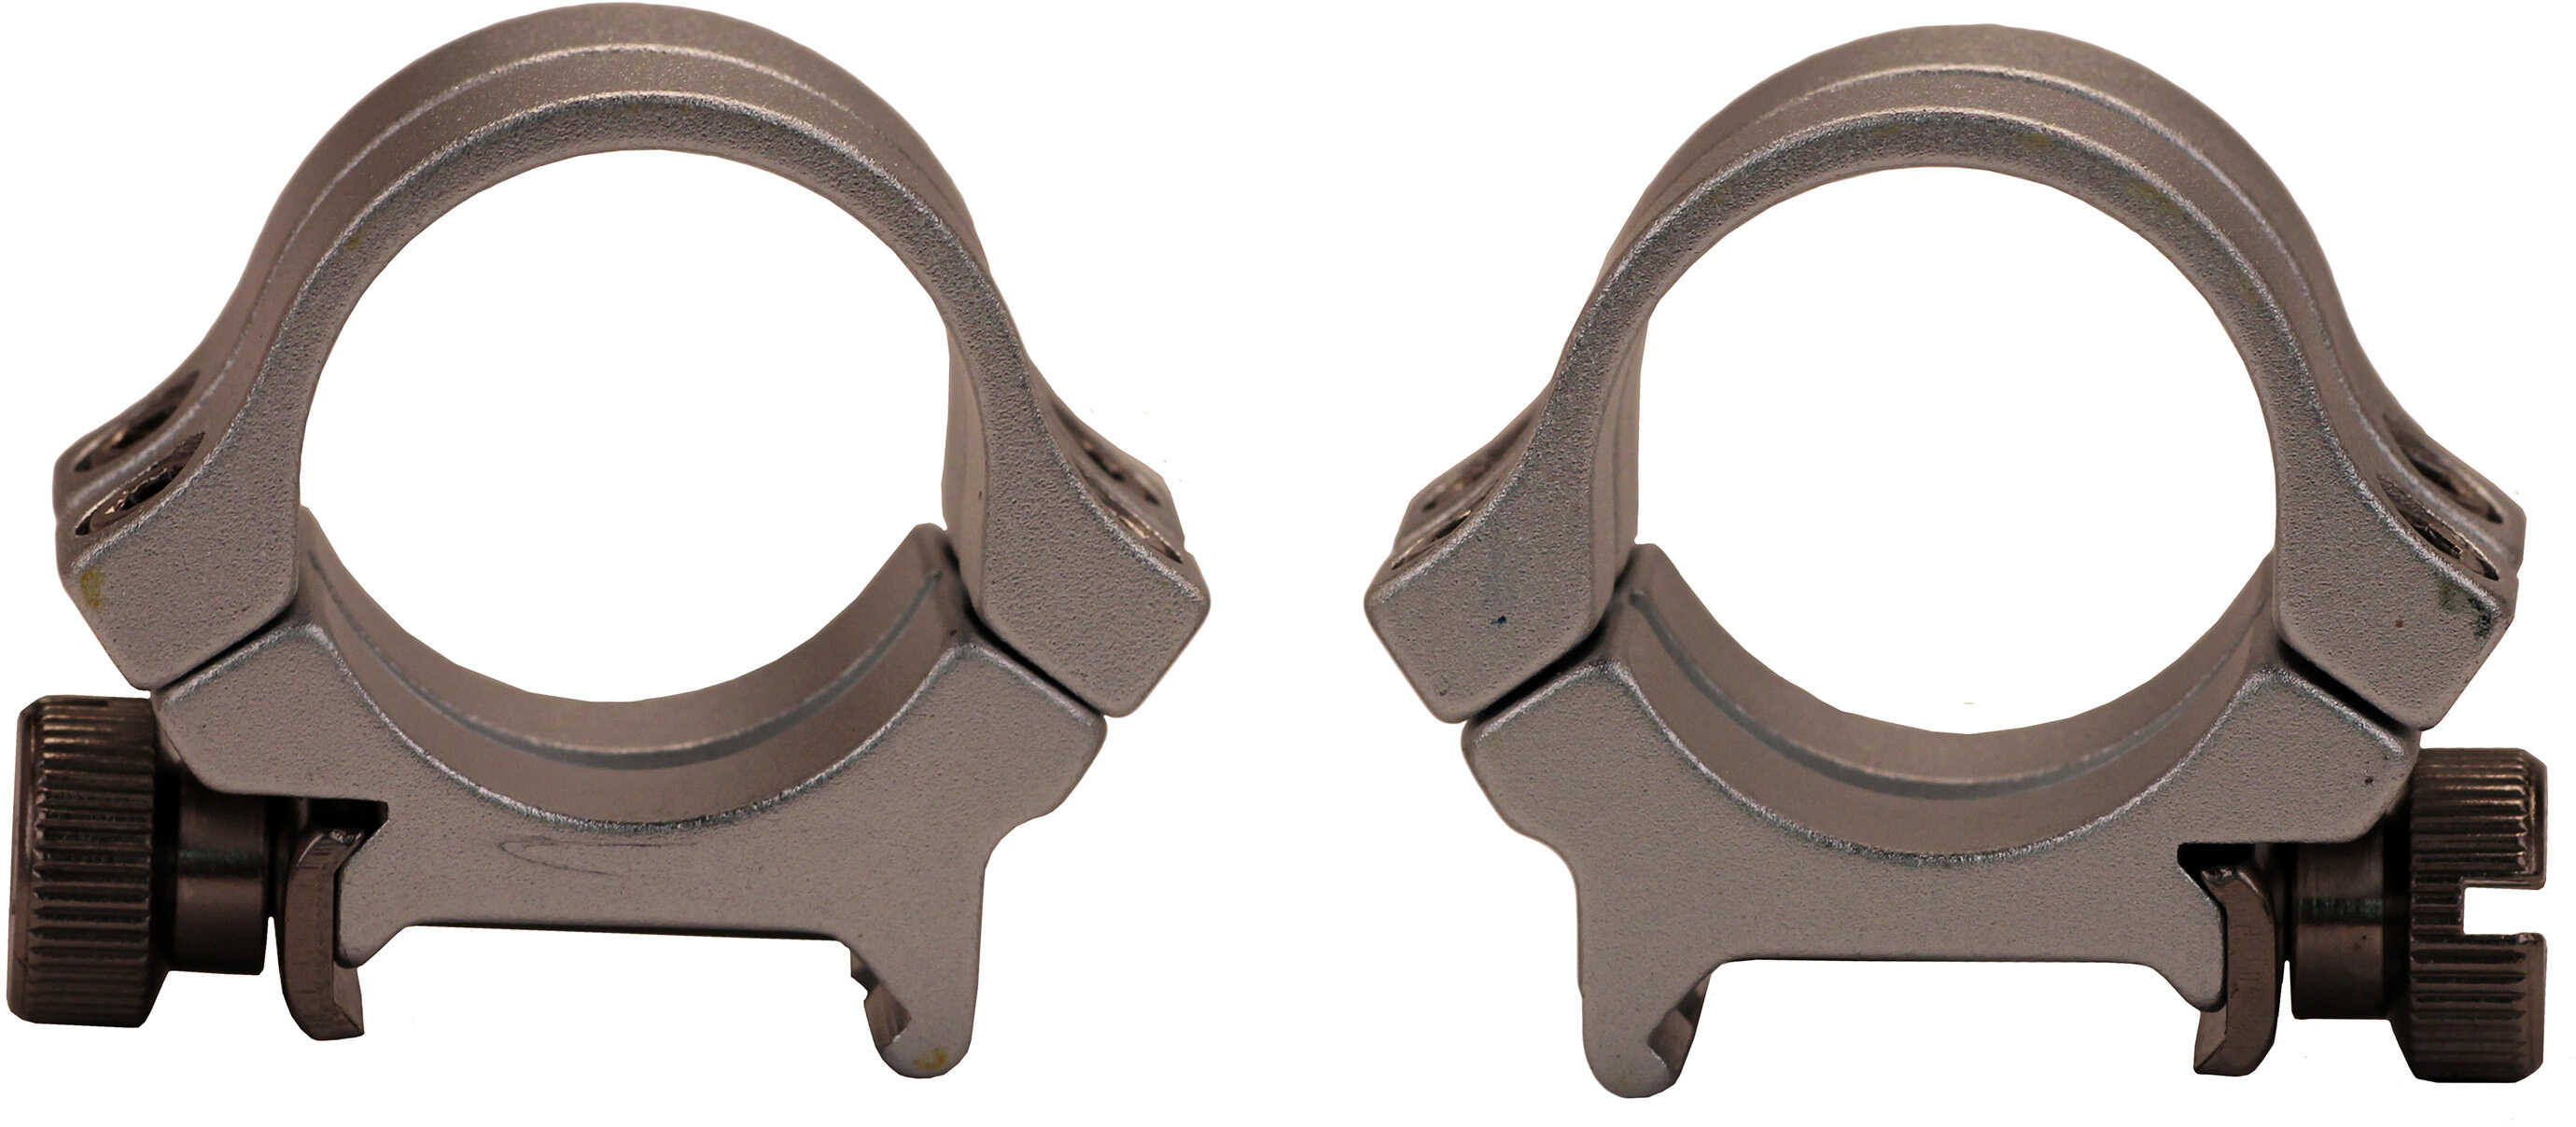 Weaver Quad Lock Detachable Scope Rings 1" Medium - Silver